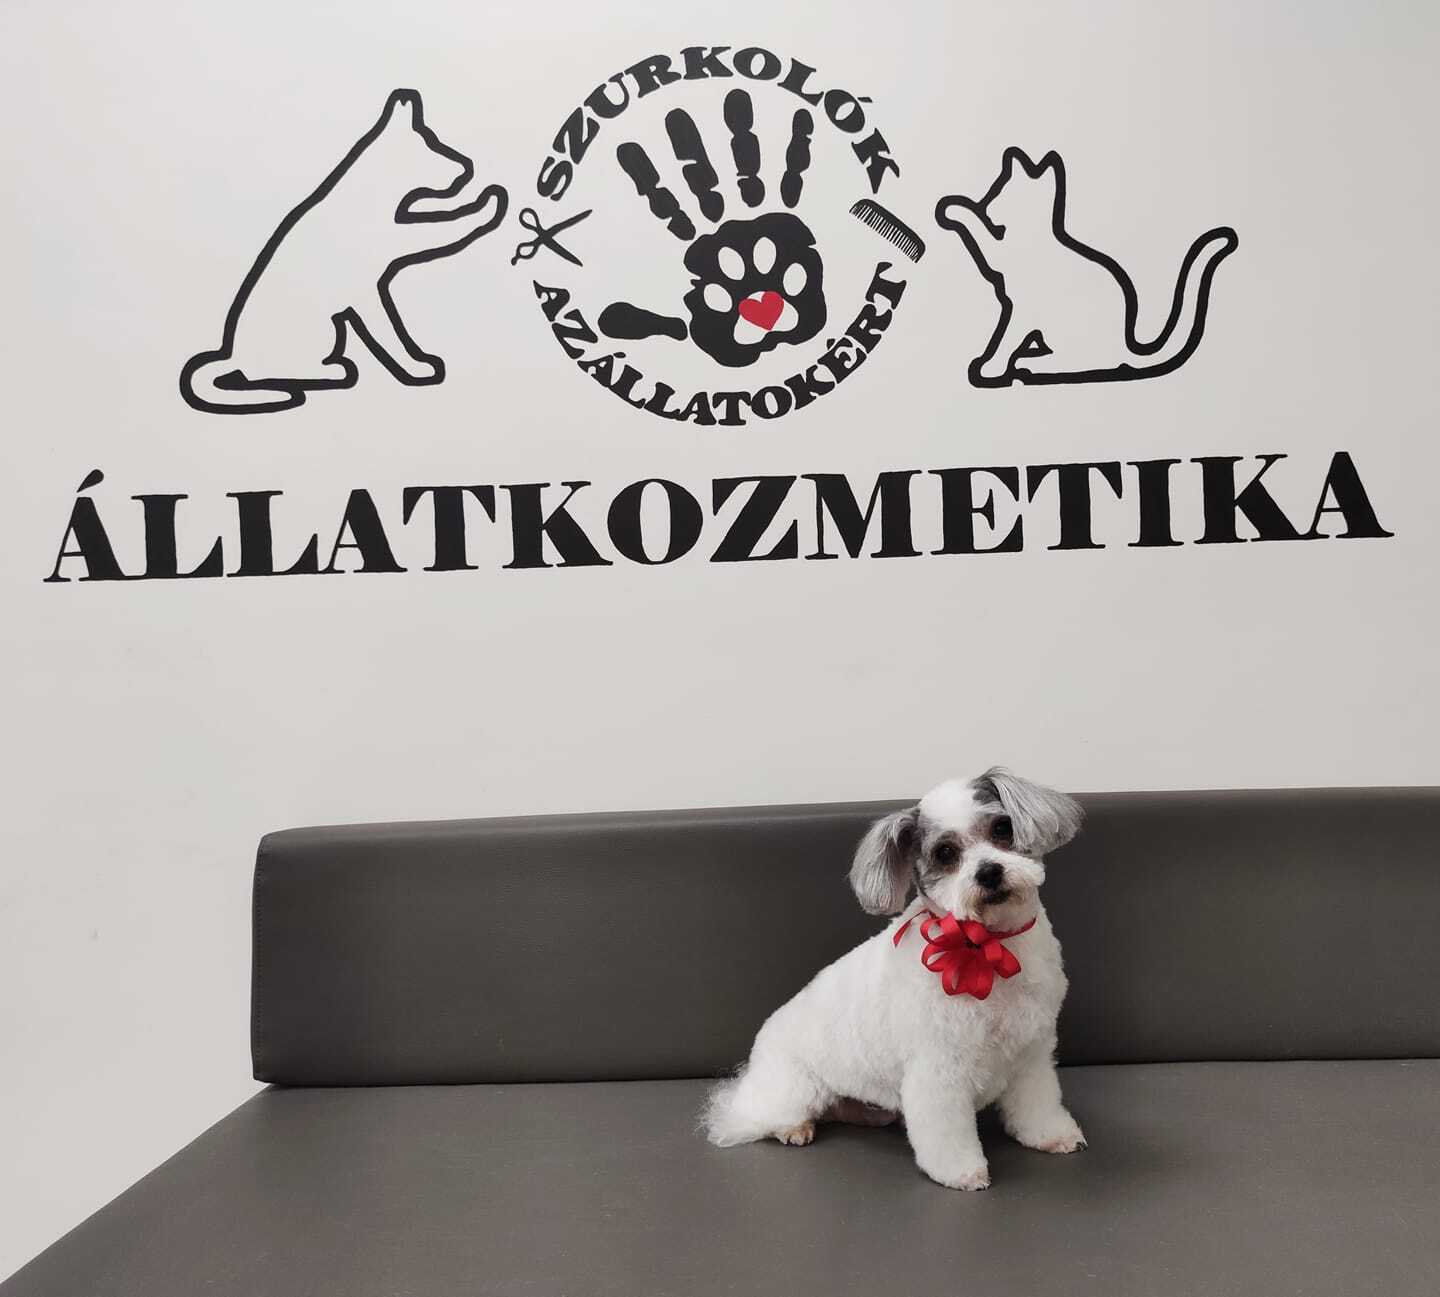 Kutyakozmetikát nyitottak a Szurkolók - a bevétel állatvédelmi célokat támogat